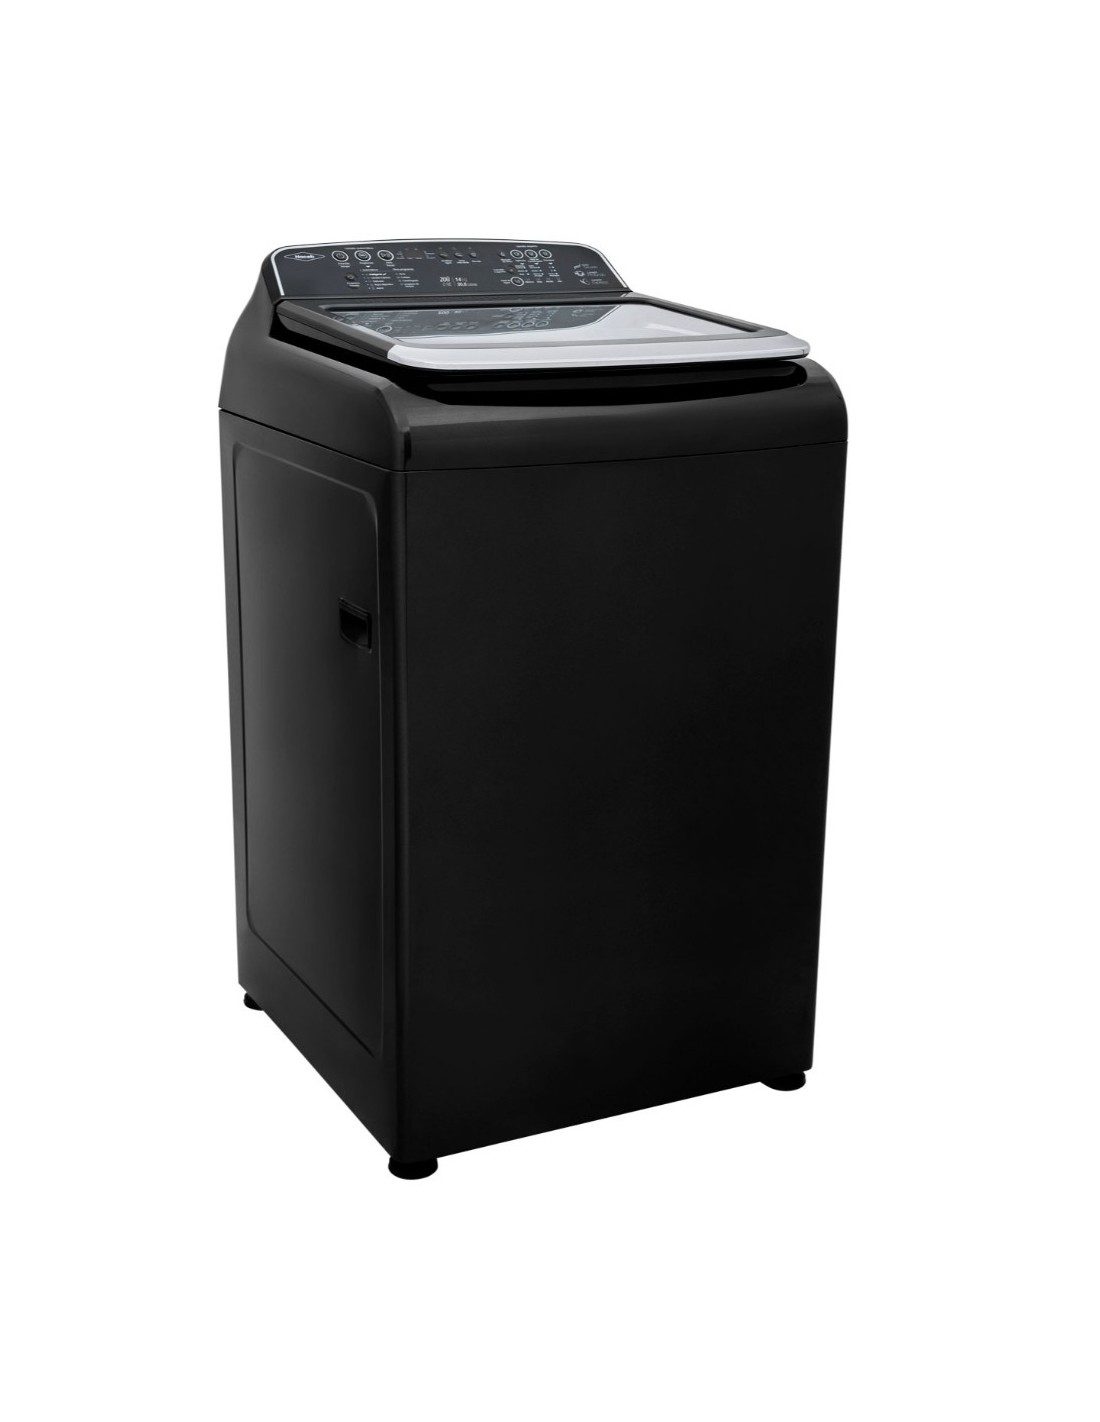 lavadora-haceb-zou-14-kg-digital-carga-superior-negra-lav-zou-14kg-d-ox (1)